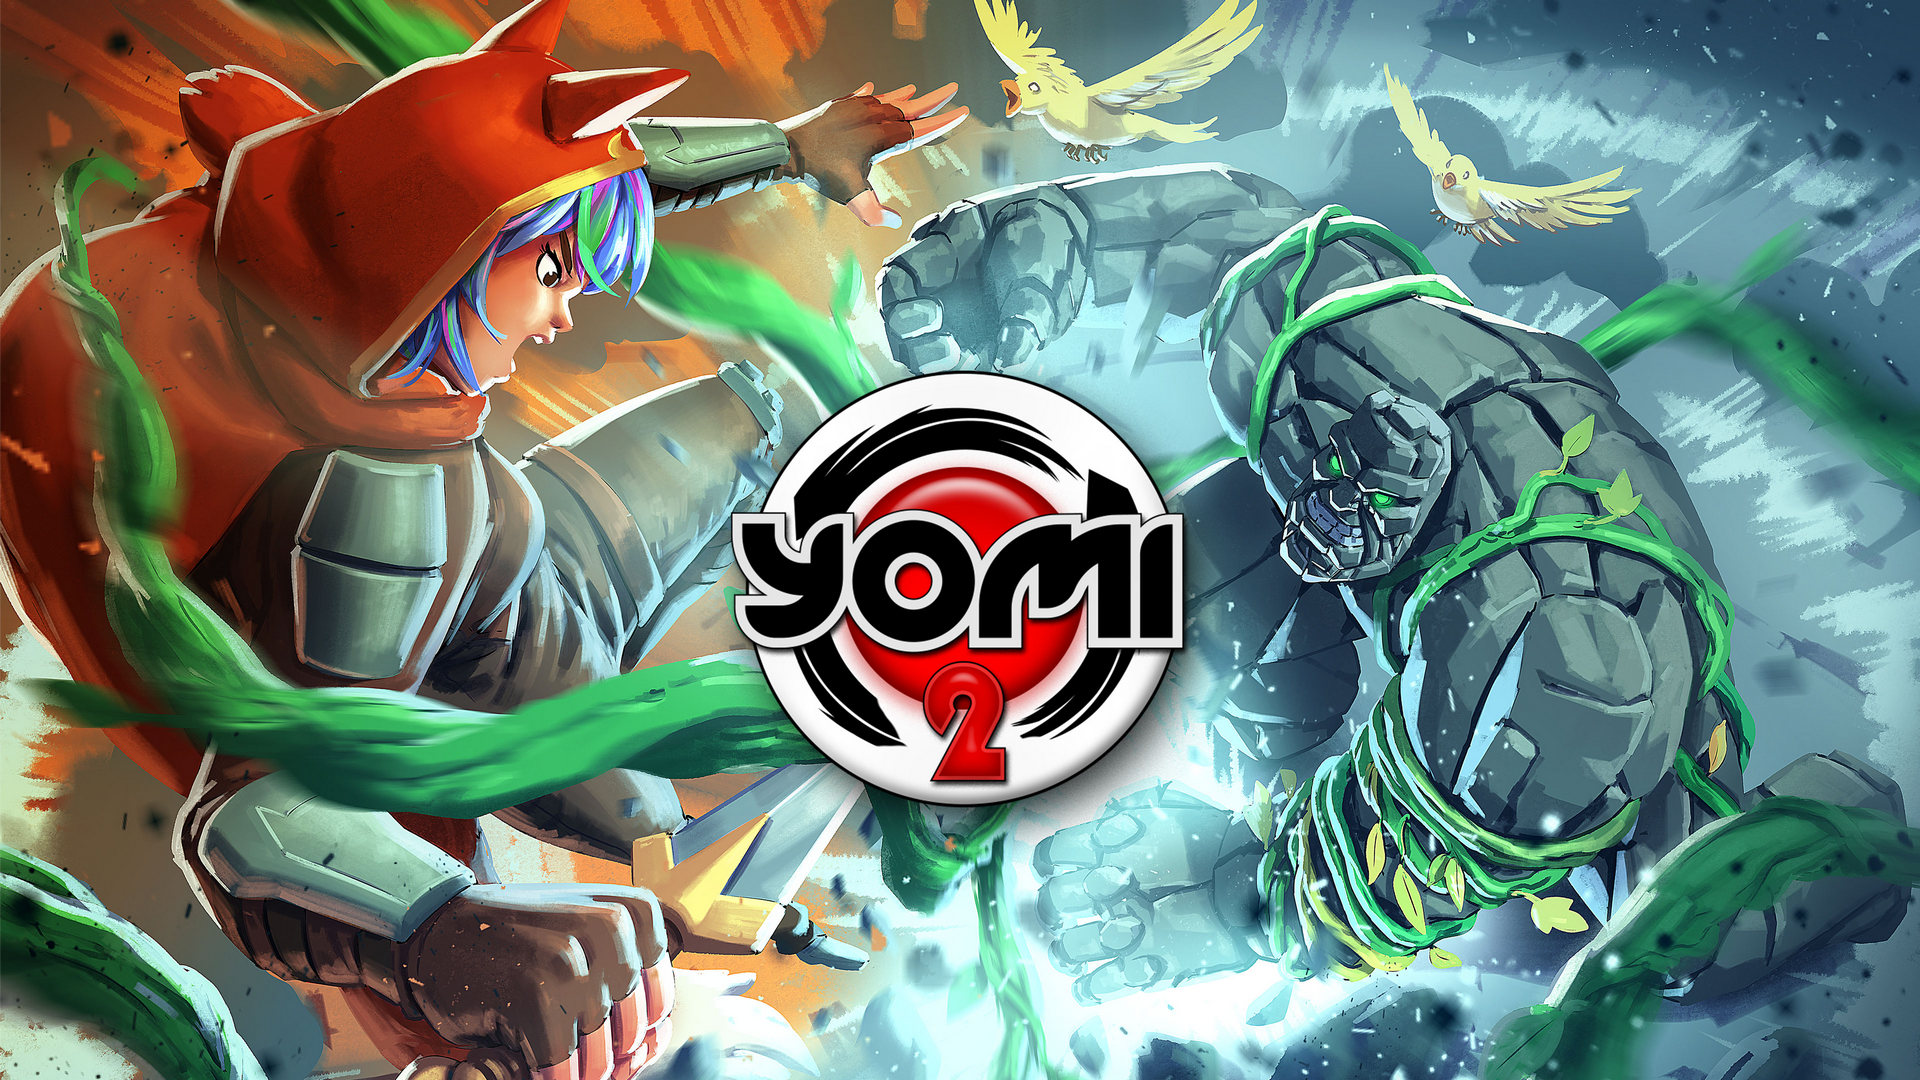 Jeu de cartes de combat Yomi 2 annoncé, accès anticipé plus tard ce mois-ci